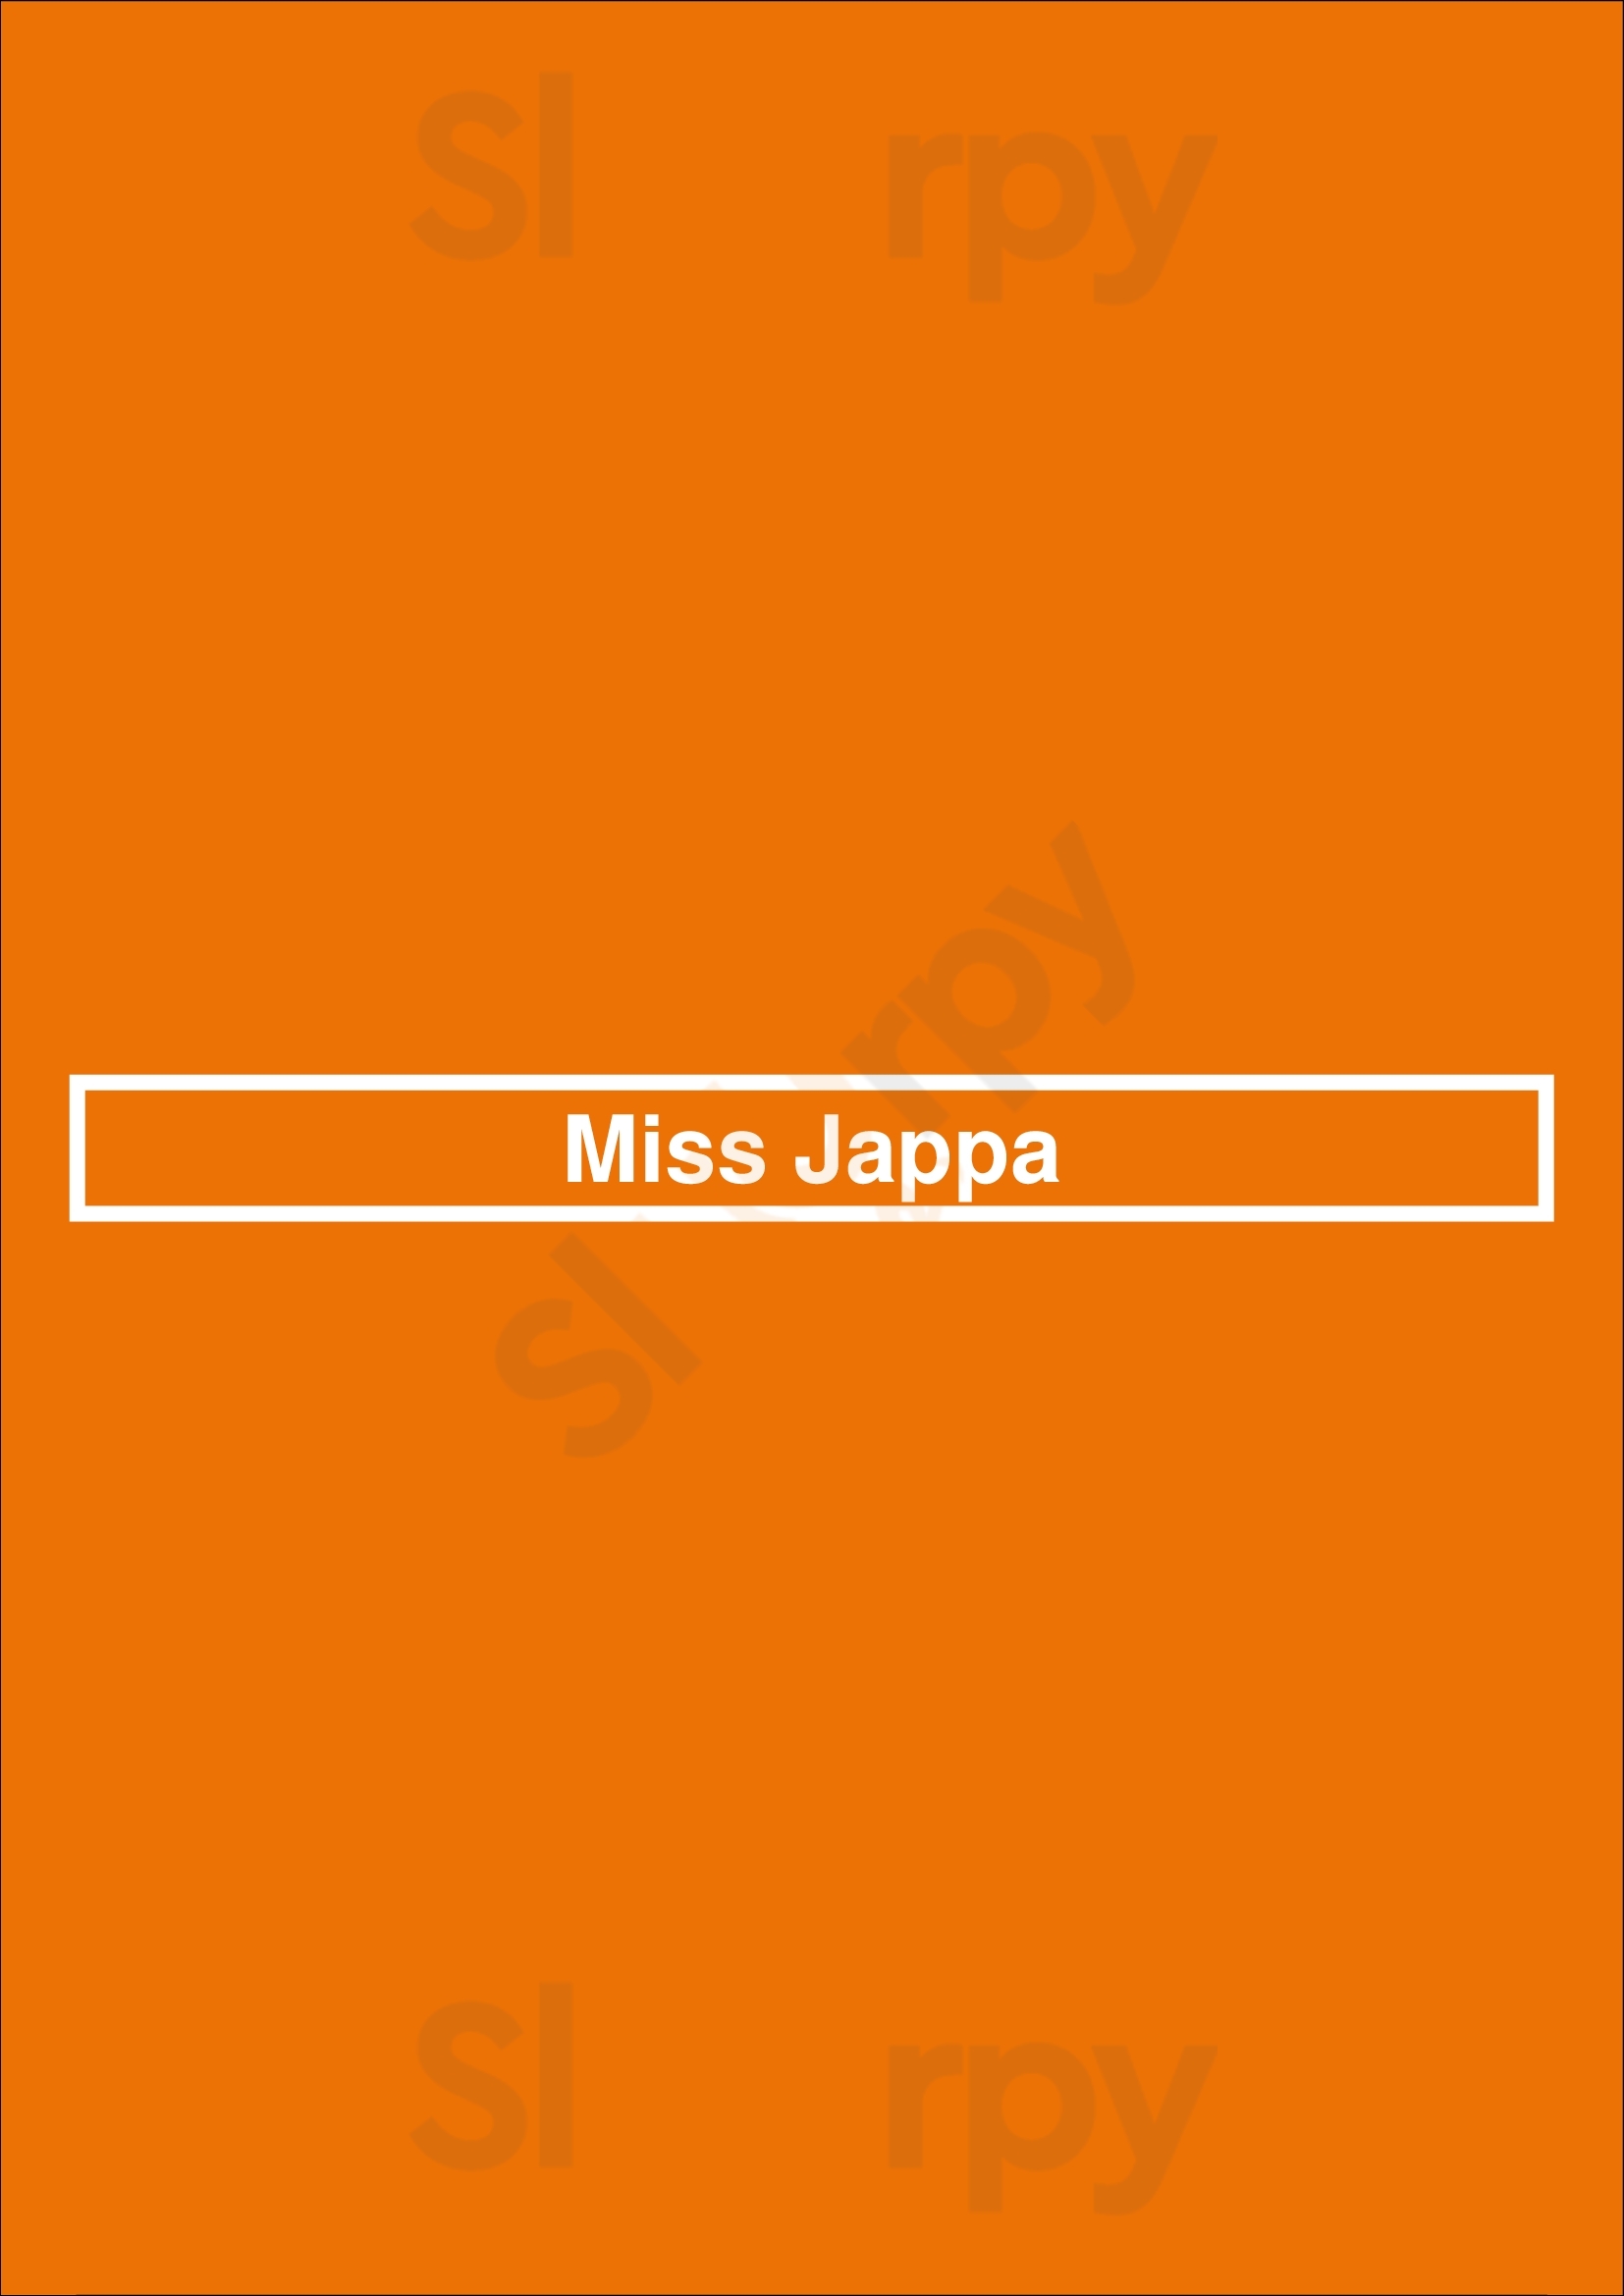 Miss Jappa Lisboa Menu - 1